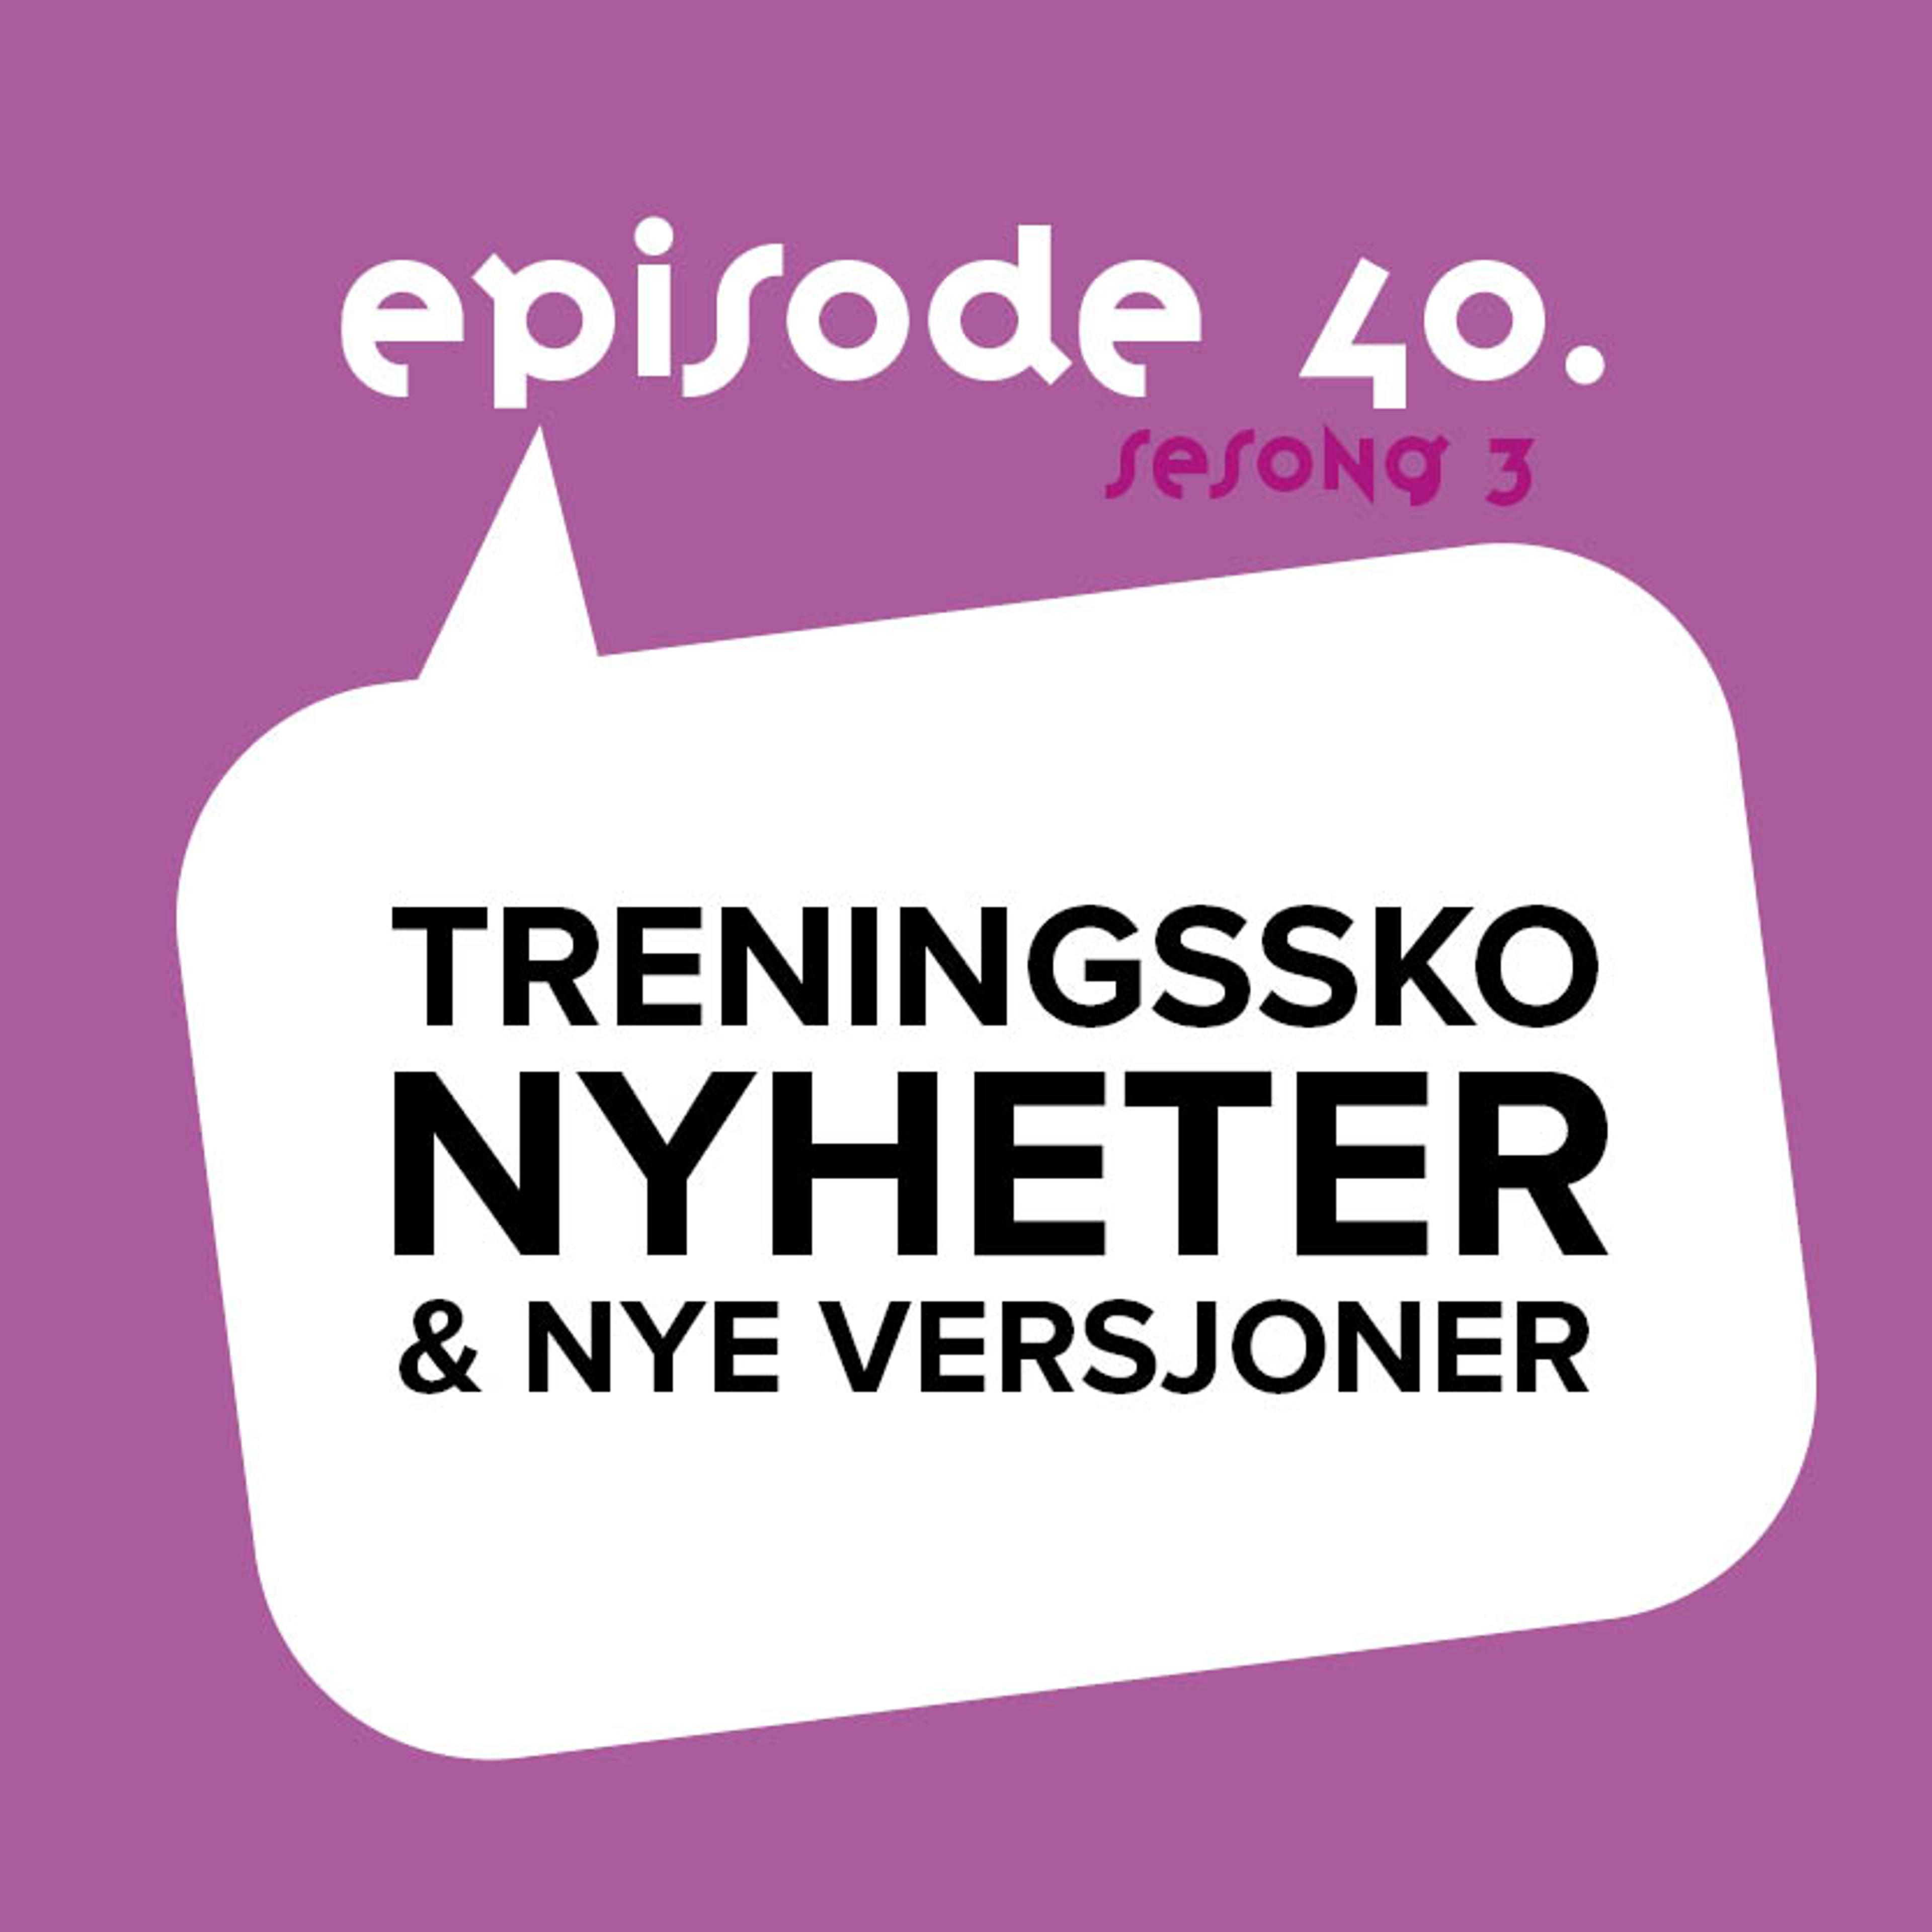 Løpeskopodden Episode 40 Treningssko Nyheter og nye versjoner